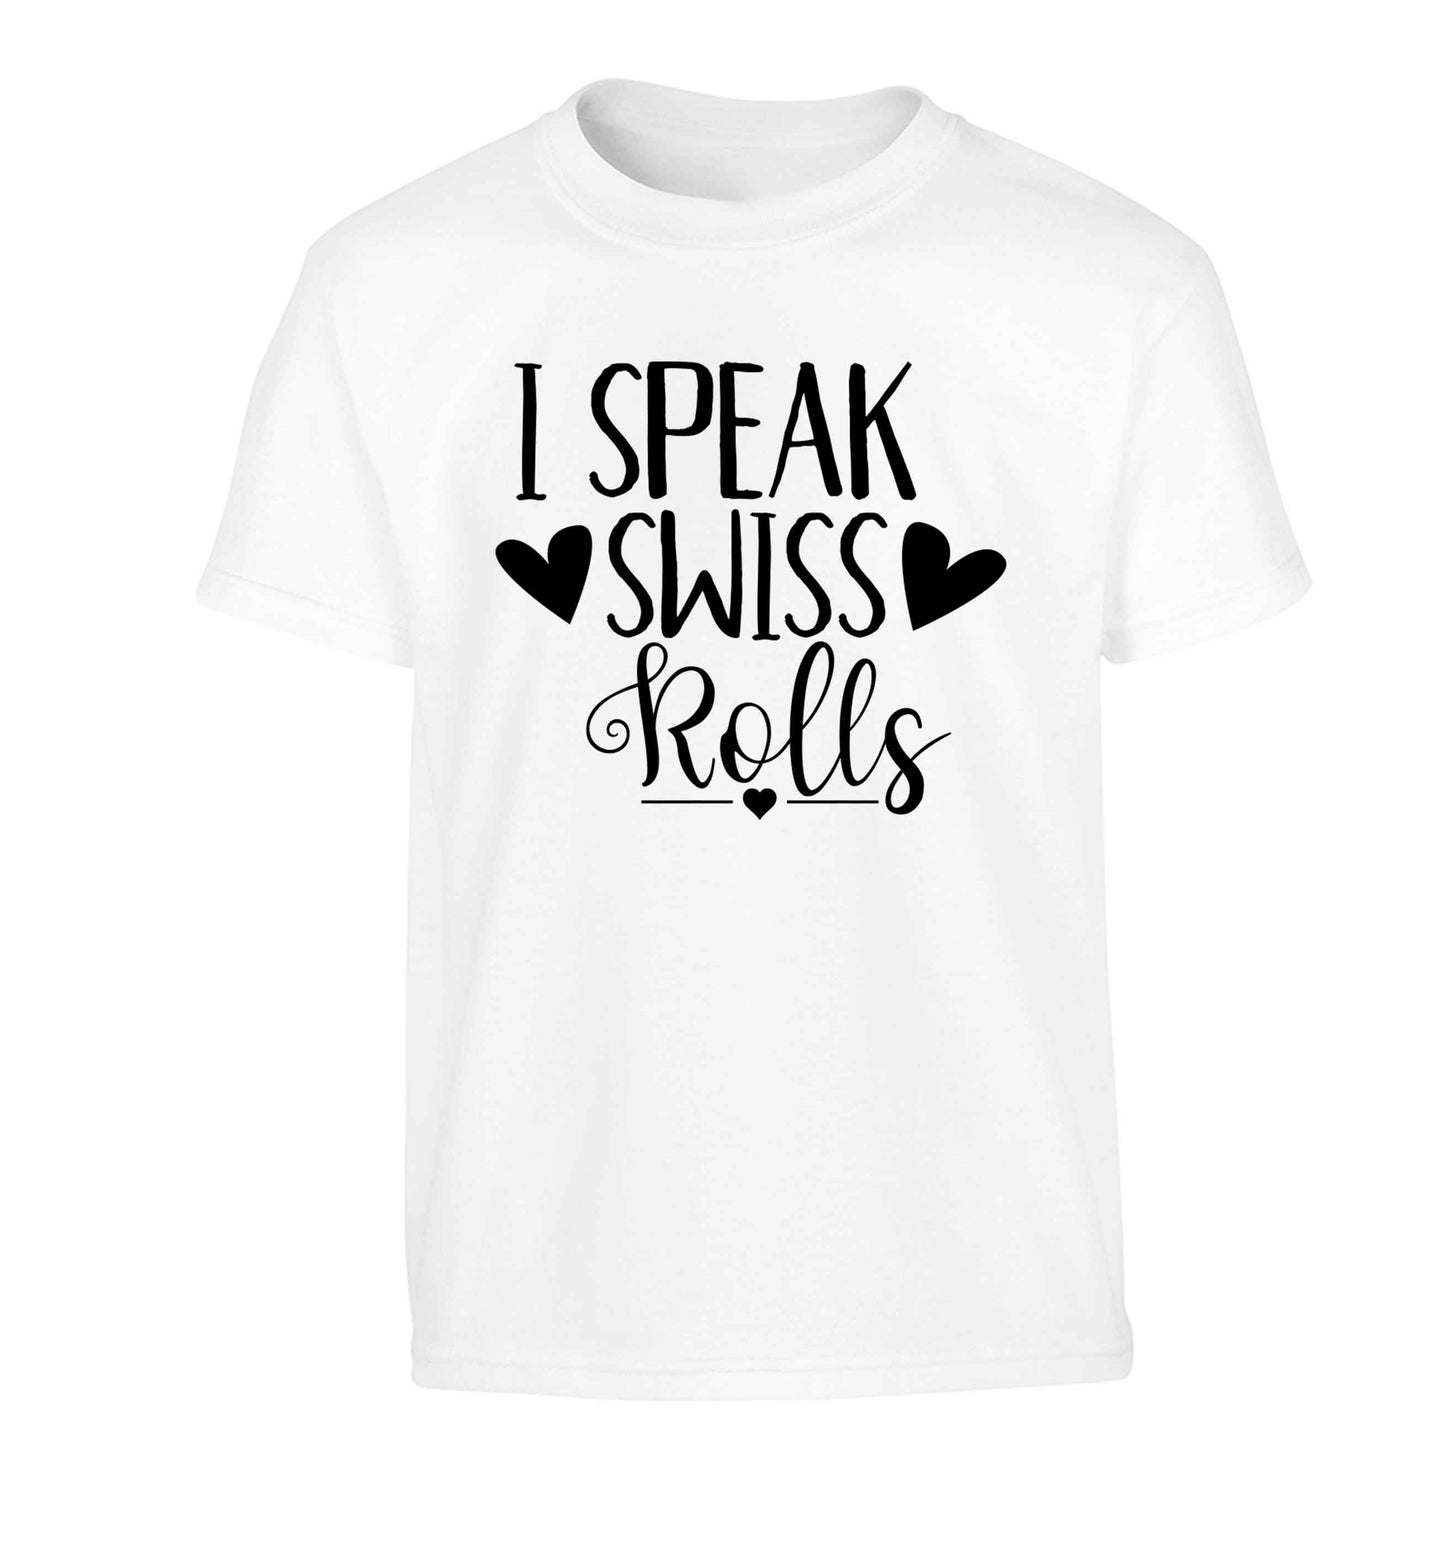 I speak swiss..rolls Children's white Tshirt 12-13 Years